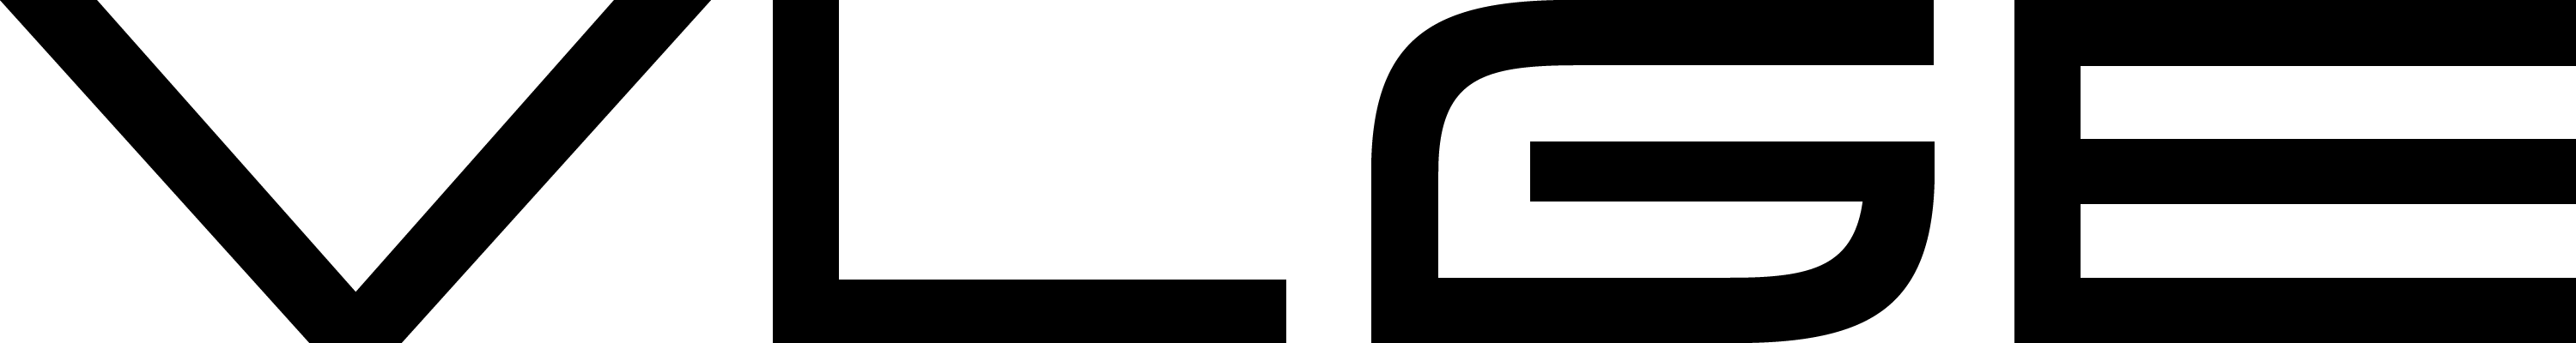 vlge logo